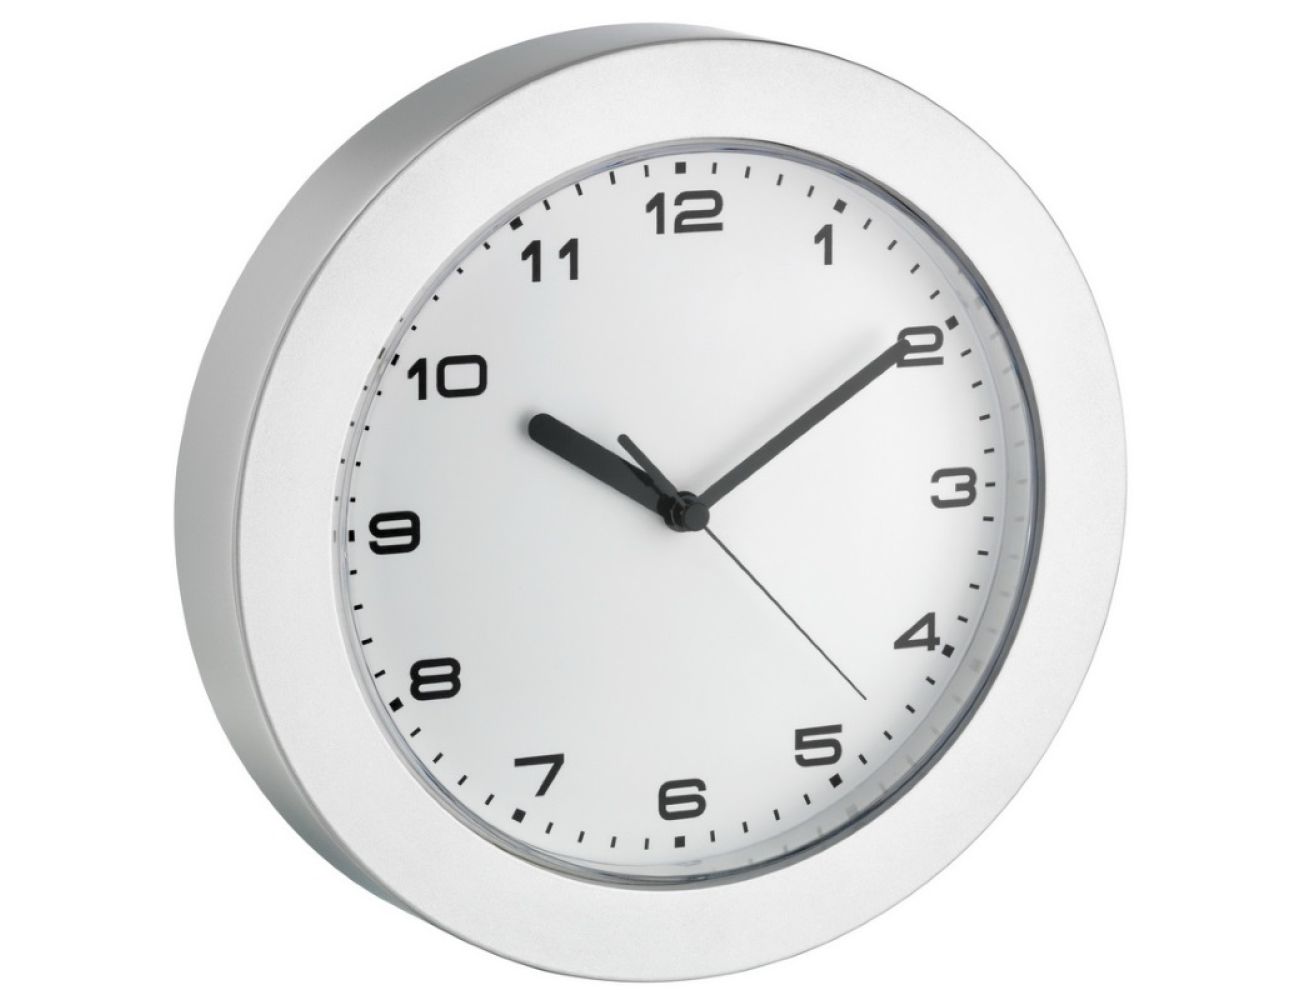 Часы настенные TFA 60302254 серебристые